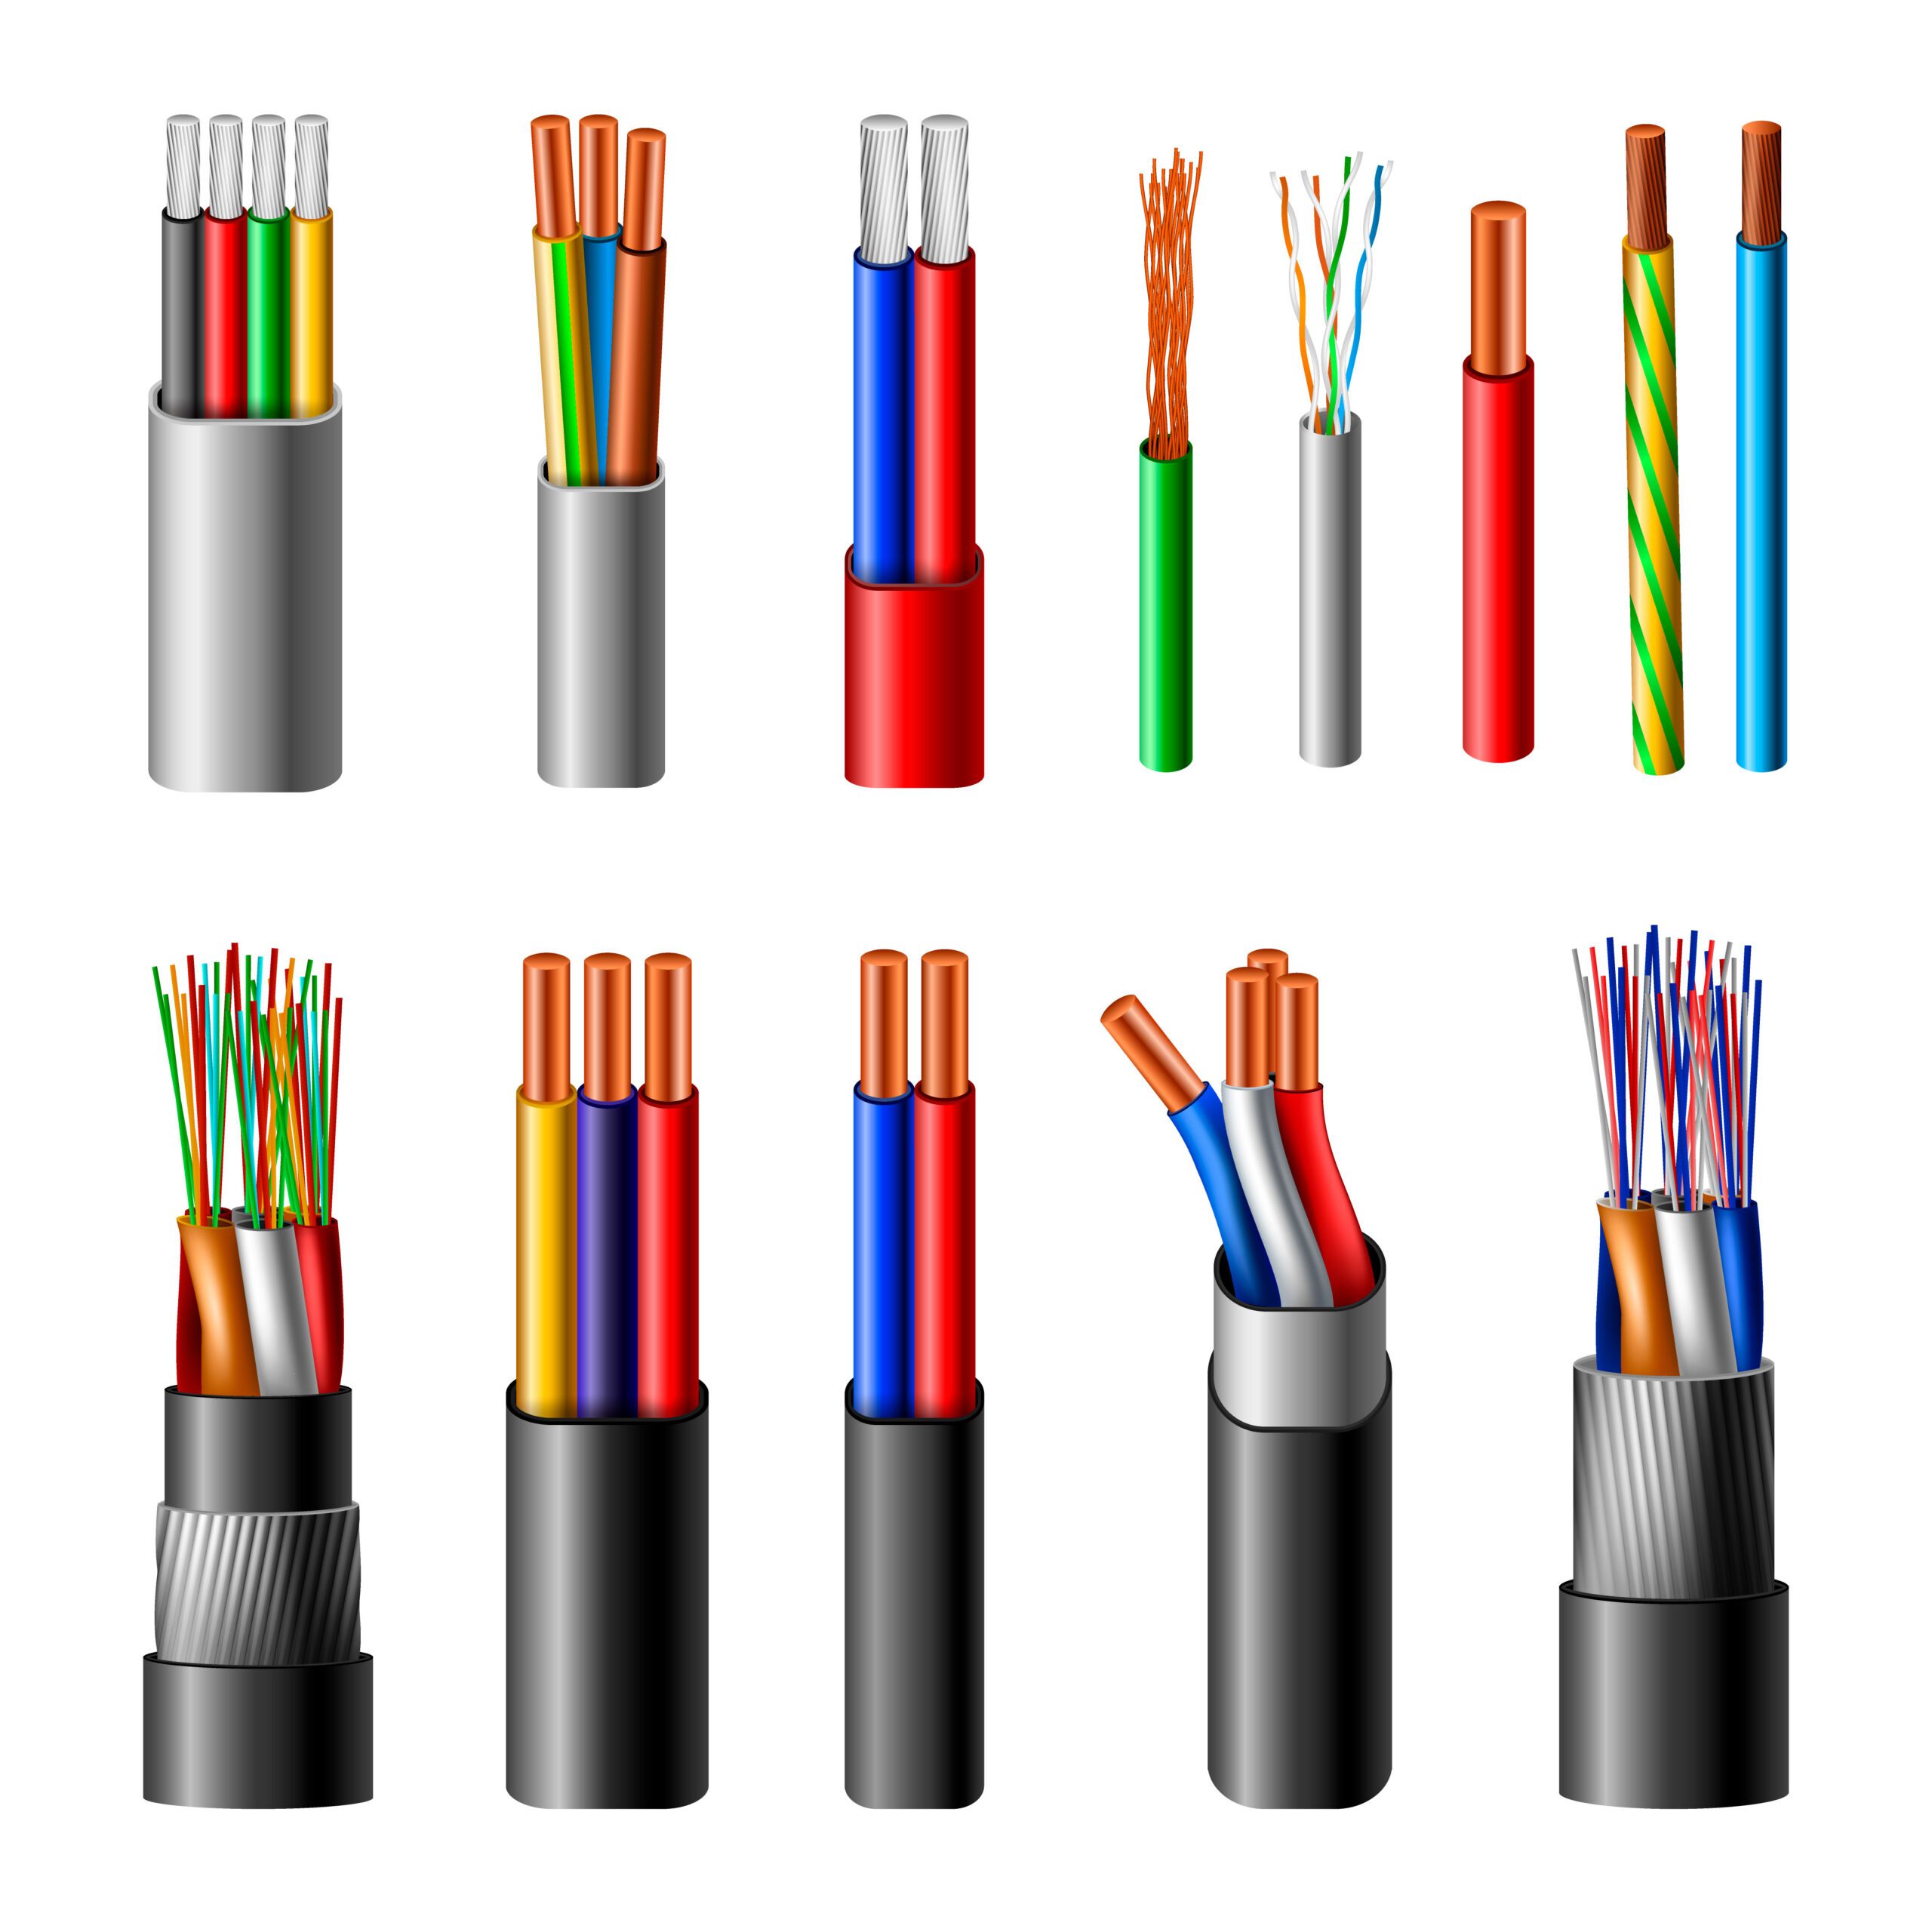 Multi strand cables